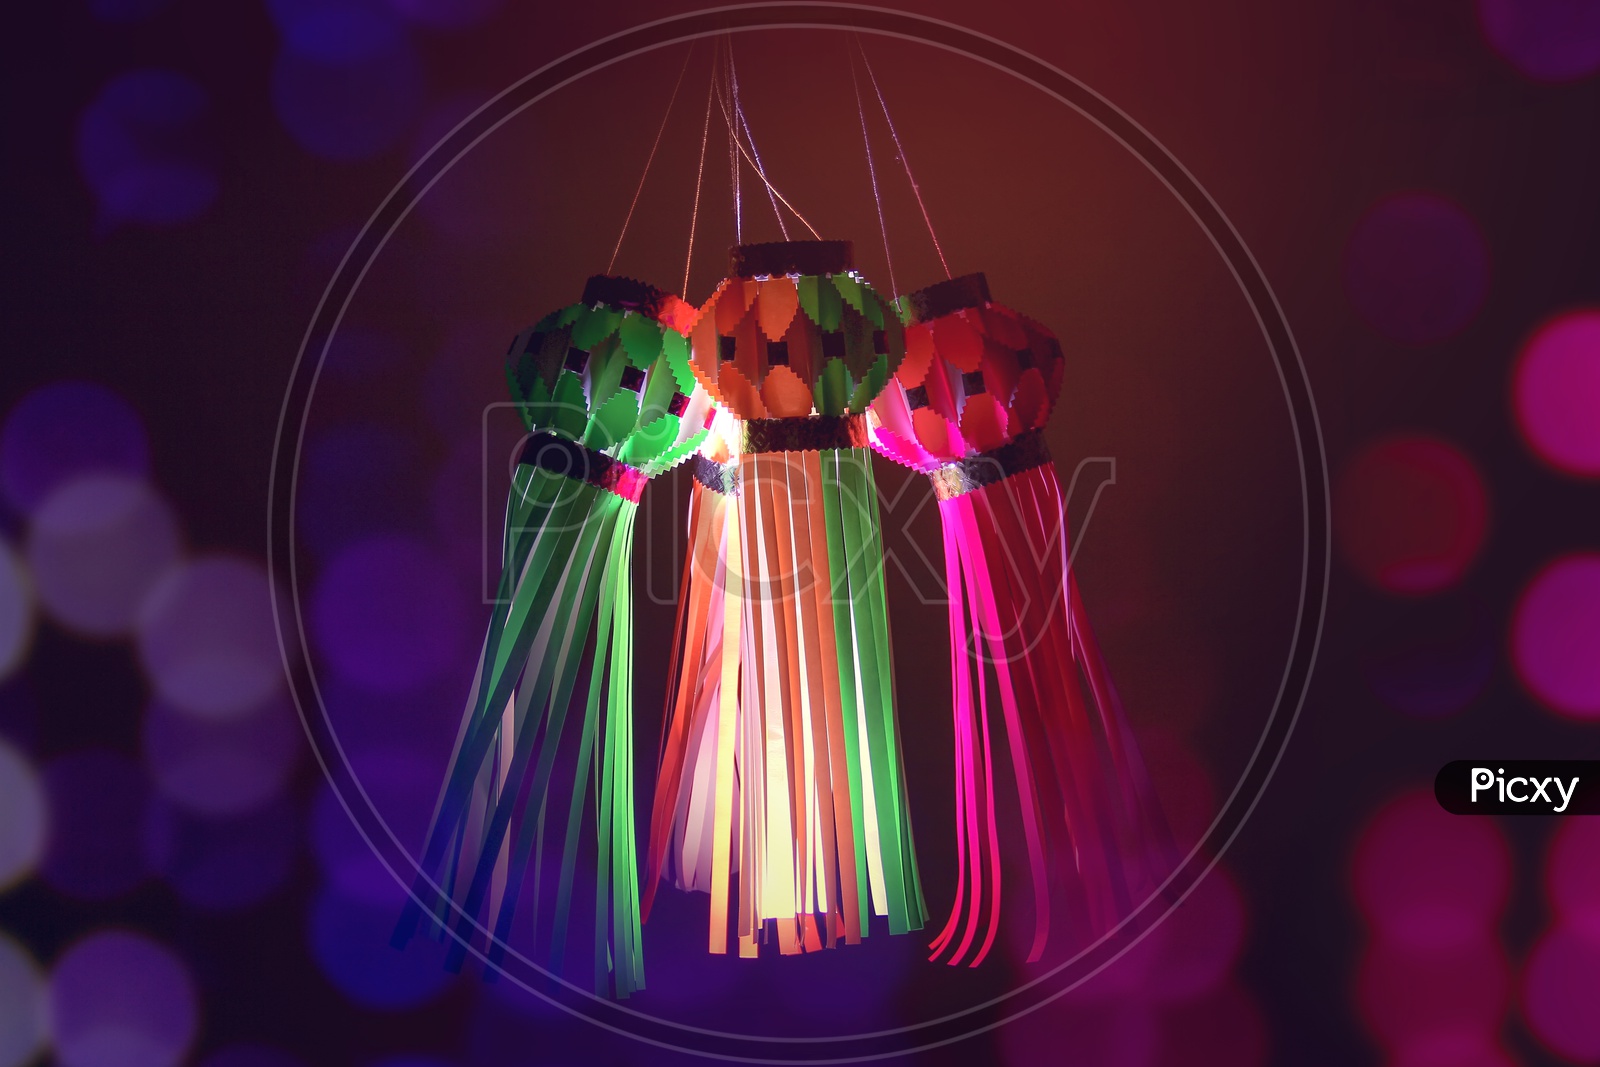 Indian Festival Diwali, Diwali Lanterns, Deepavali Lanterns